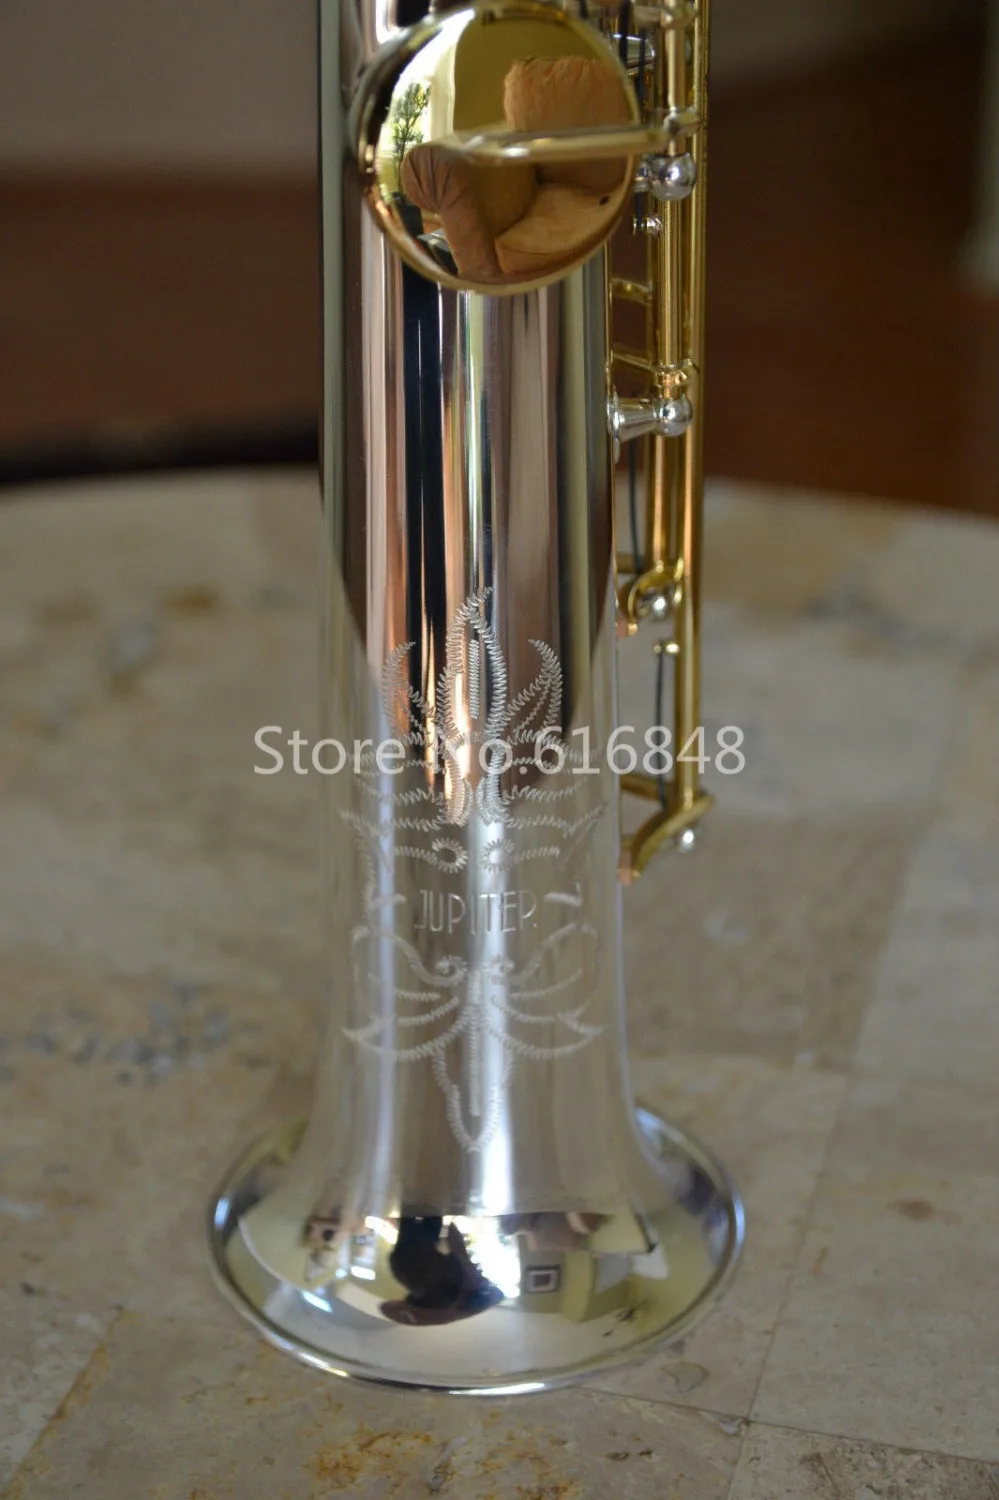 JUPITER JPS-847 Сопрано-саксофон Посеребренный корпус, покрытый Золотым лаком Ключ, Латунный саксофон, Прямая труба, инструмент B (b) с футляром